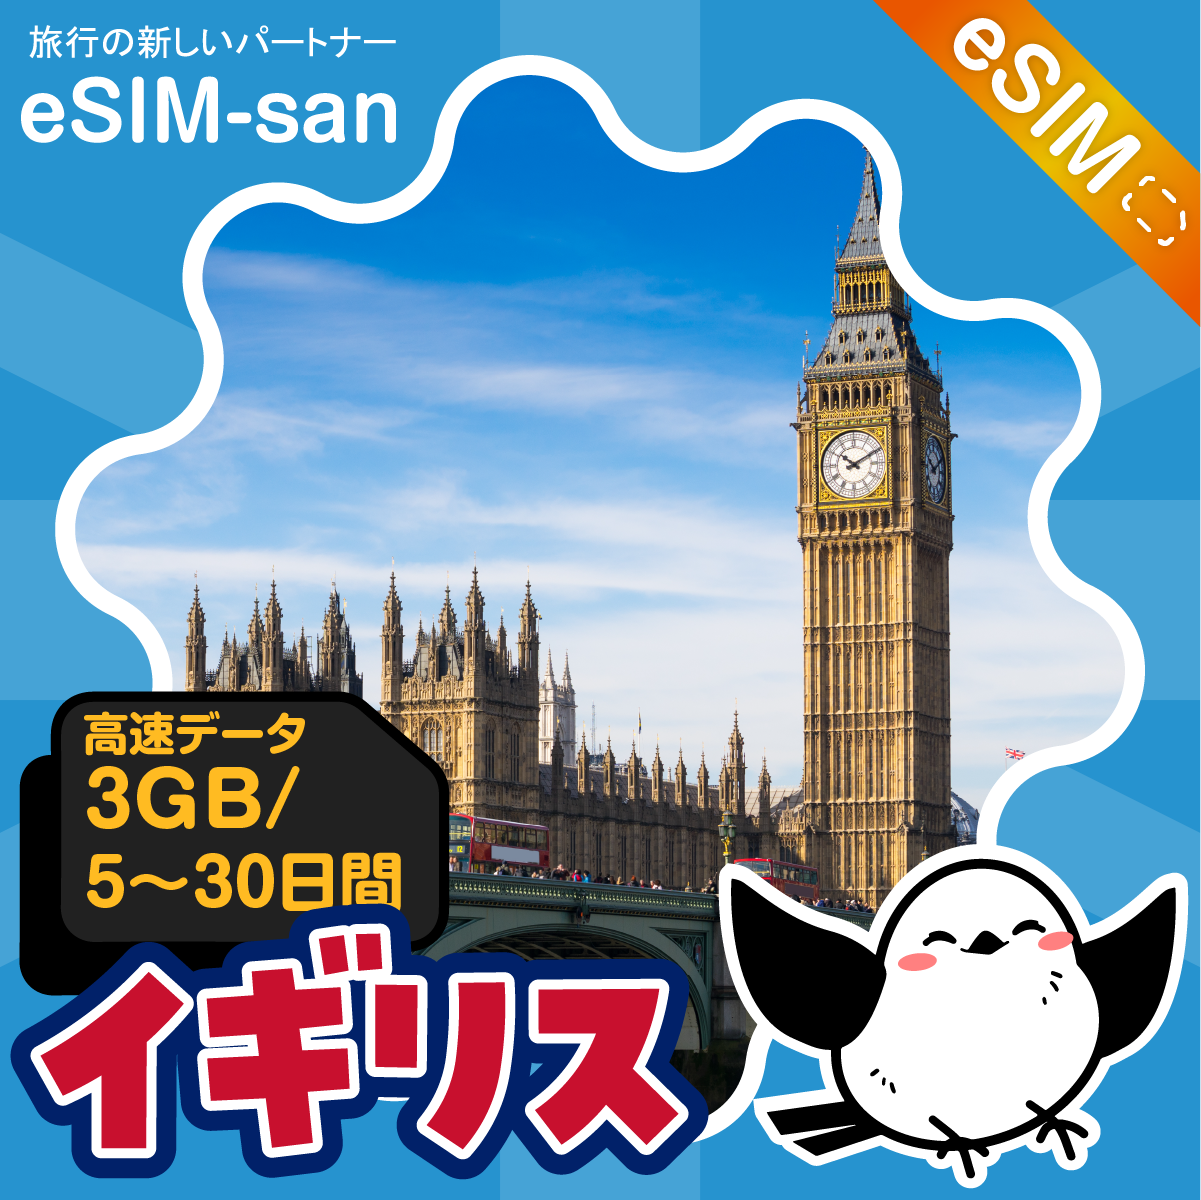 イギリスeSIMの3GB/dayプラン画像_eSIM-san